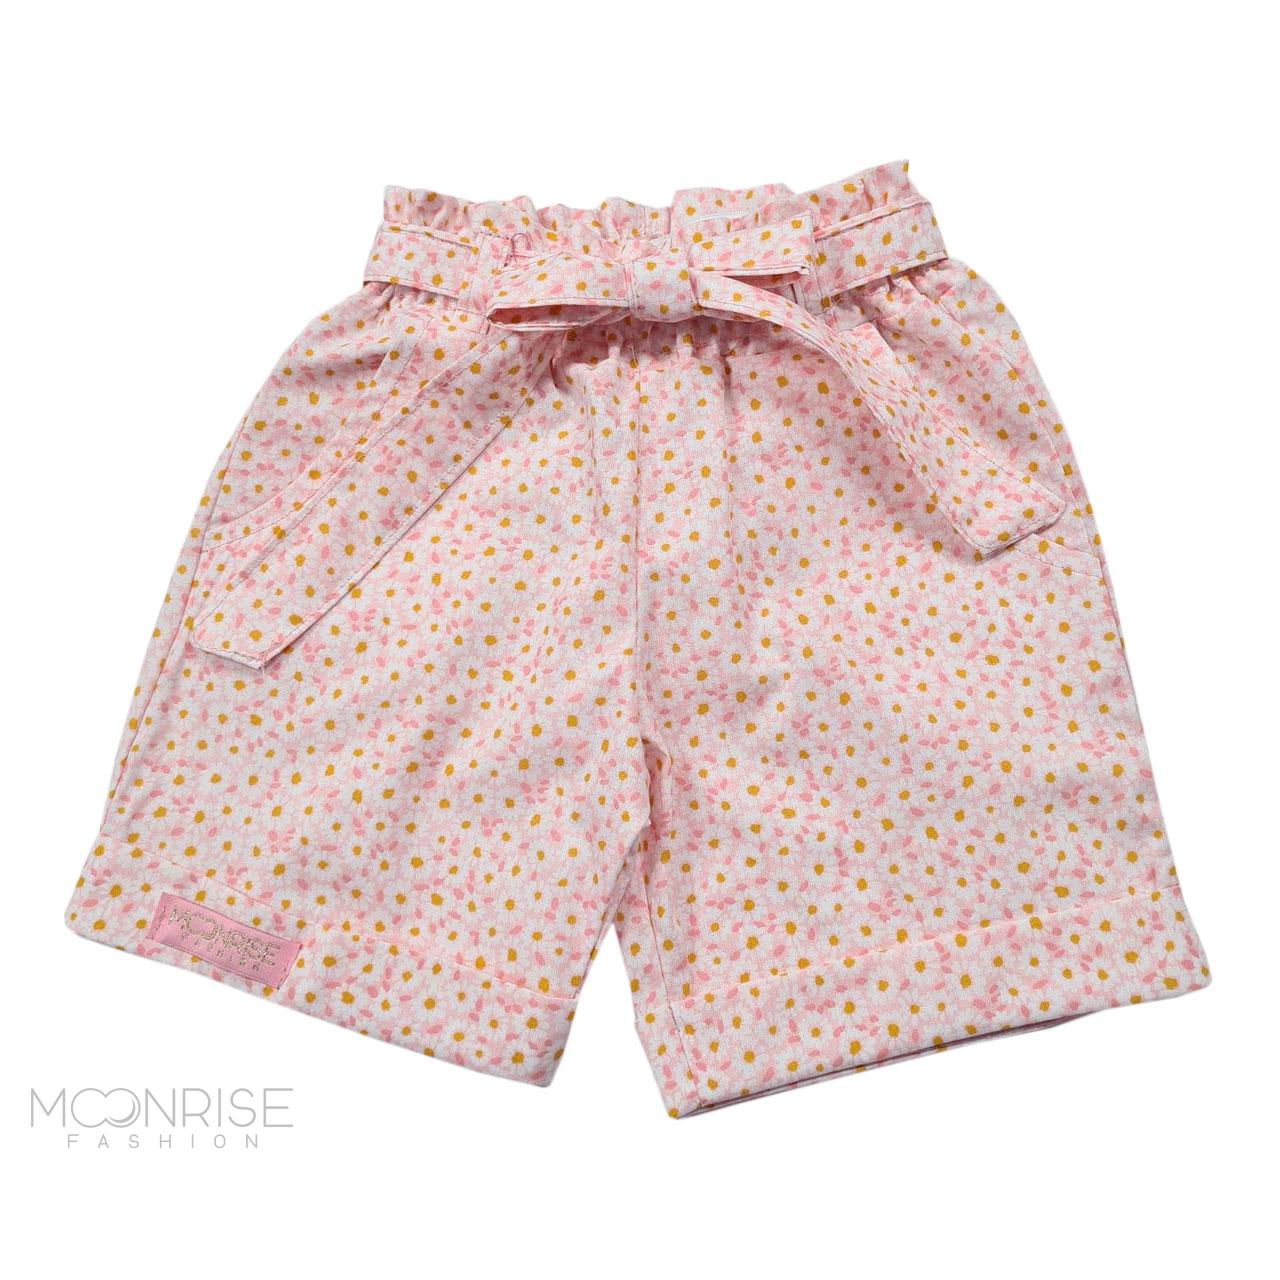 Detské bavlnené kraťasy - daisies light pink - 104